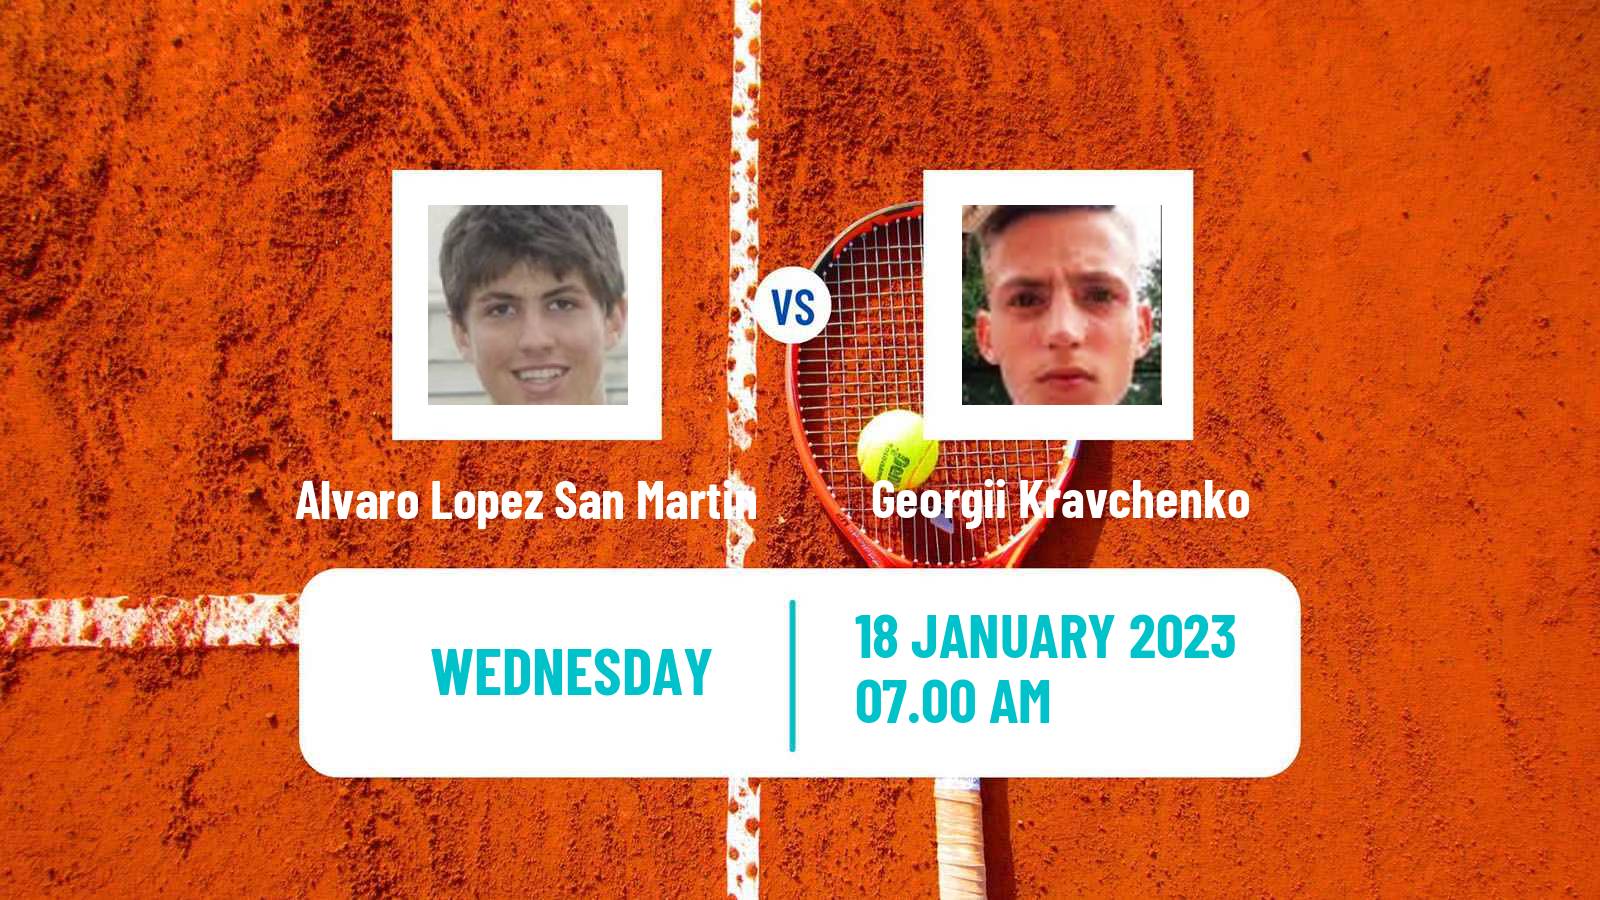 Tennis ITF Tournaments Alvaro Lopez San Martin - Georgii Kravchenko